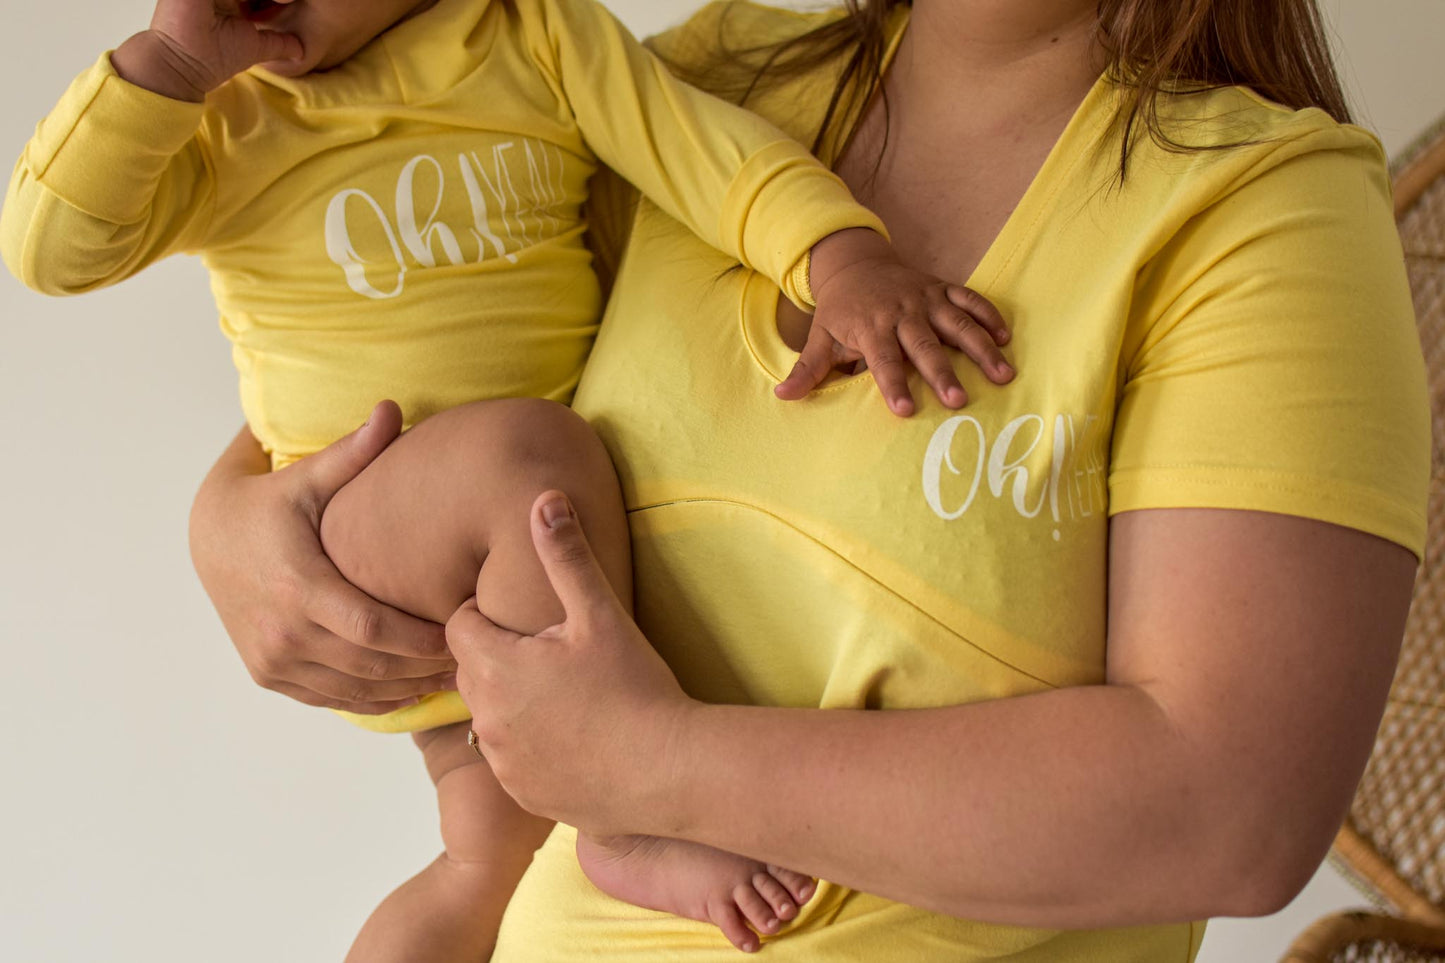 LARGE - JAUNE Oh! YEAH t-shirt 3 en 1 maternité, allaitement, postpartum - léger défaut ( réf #176 )